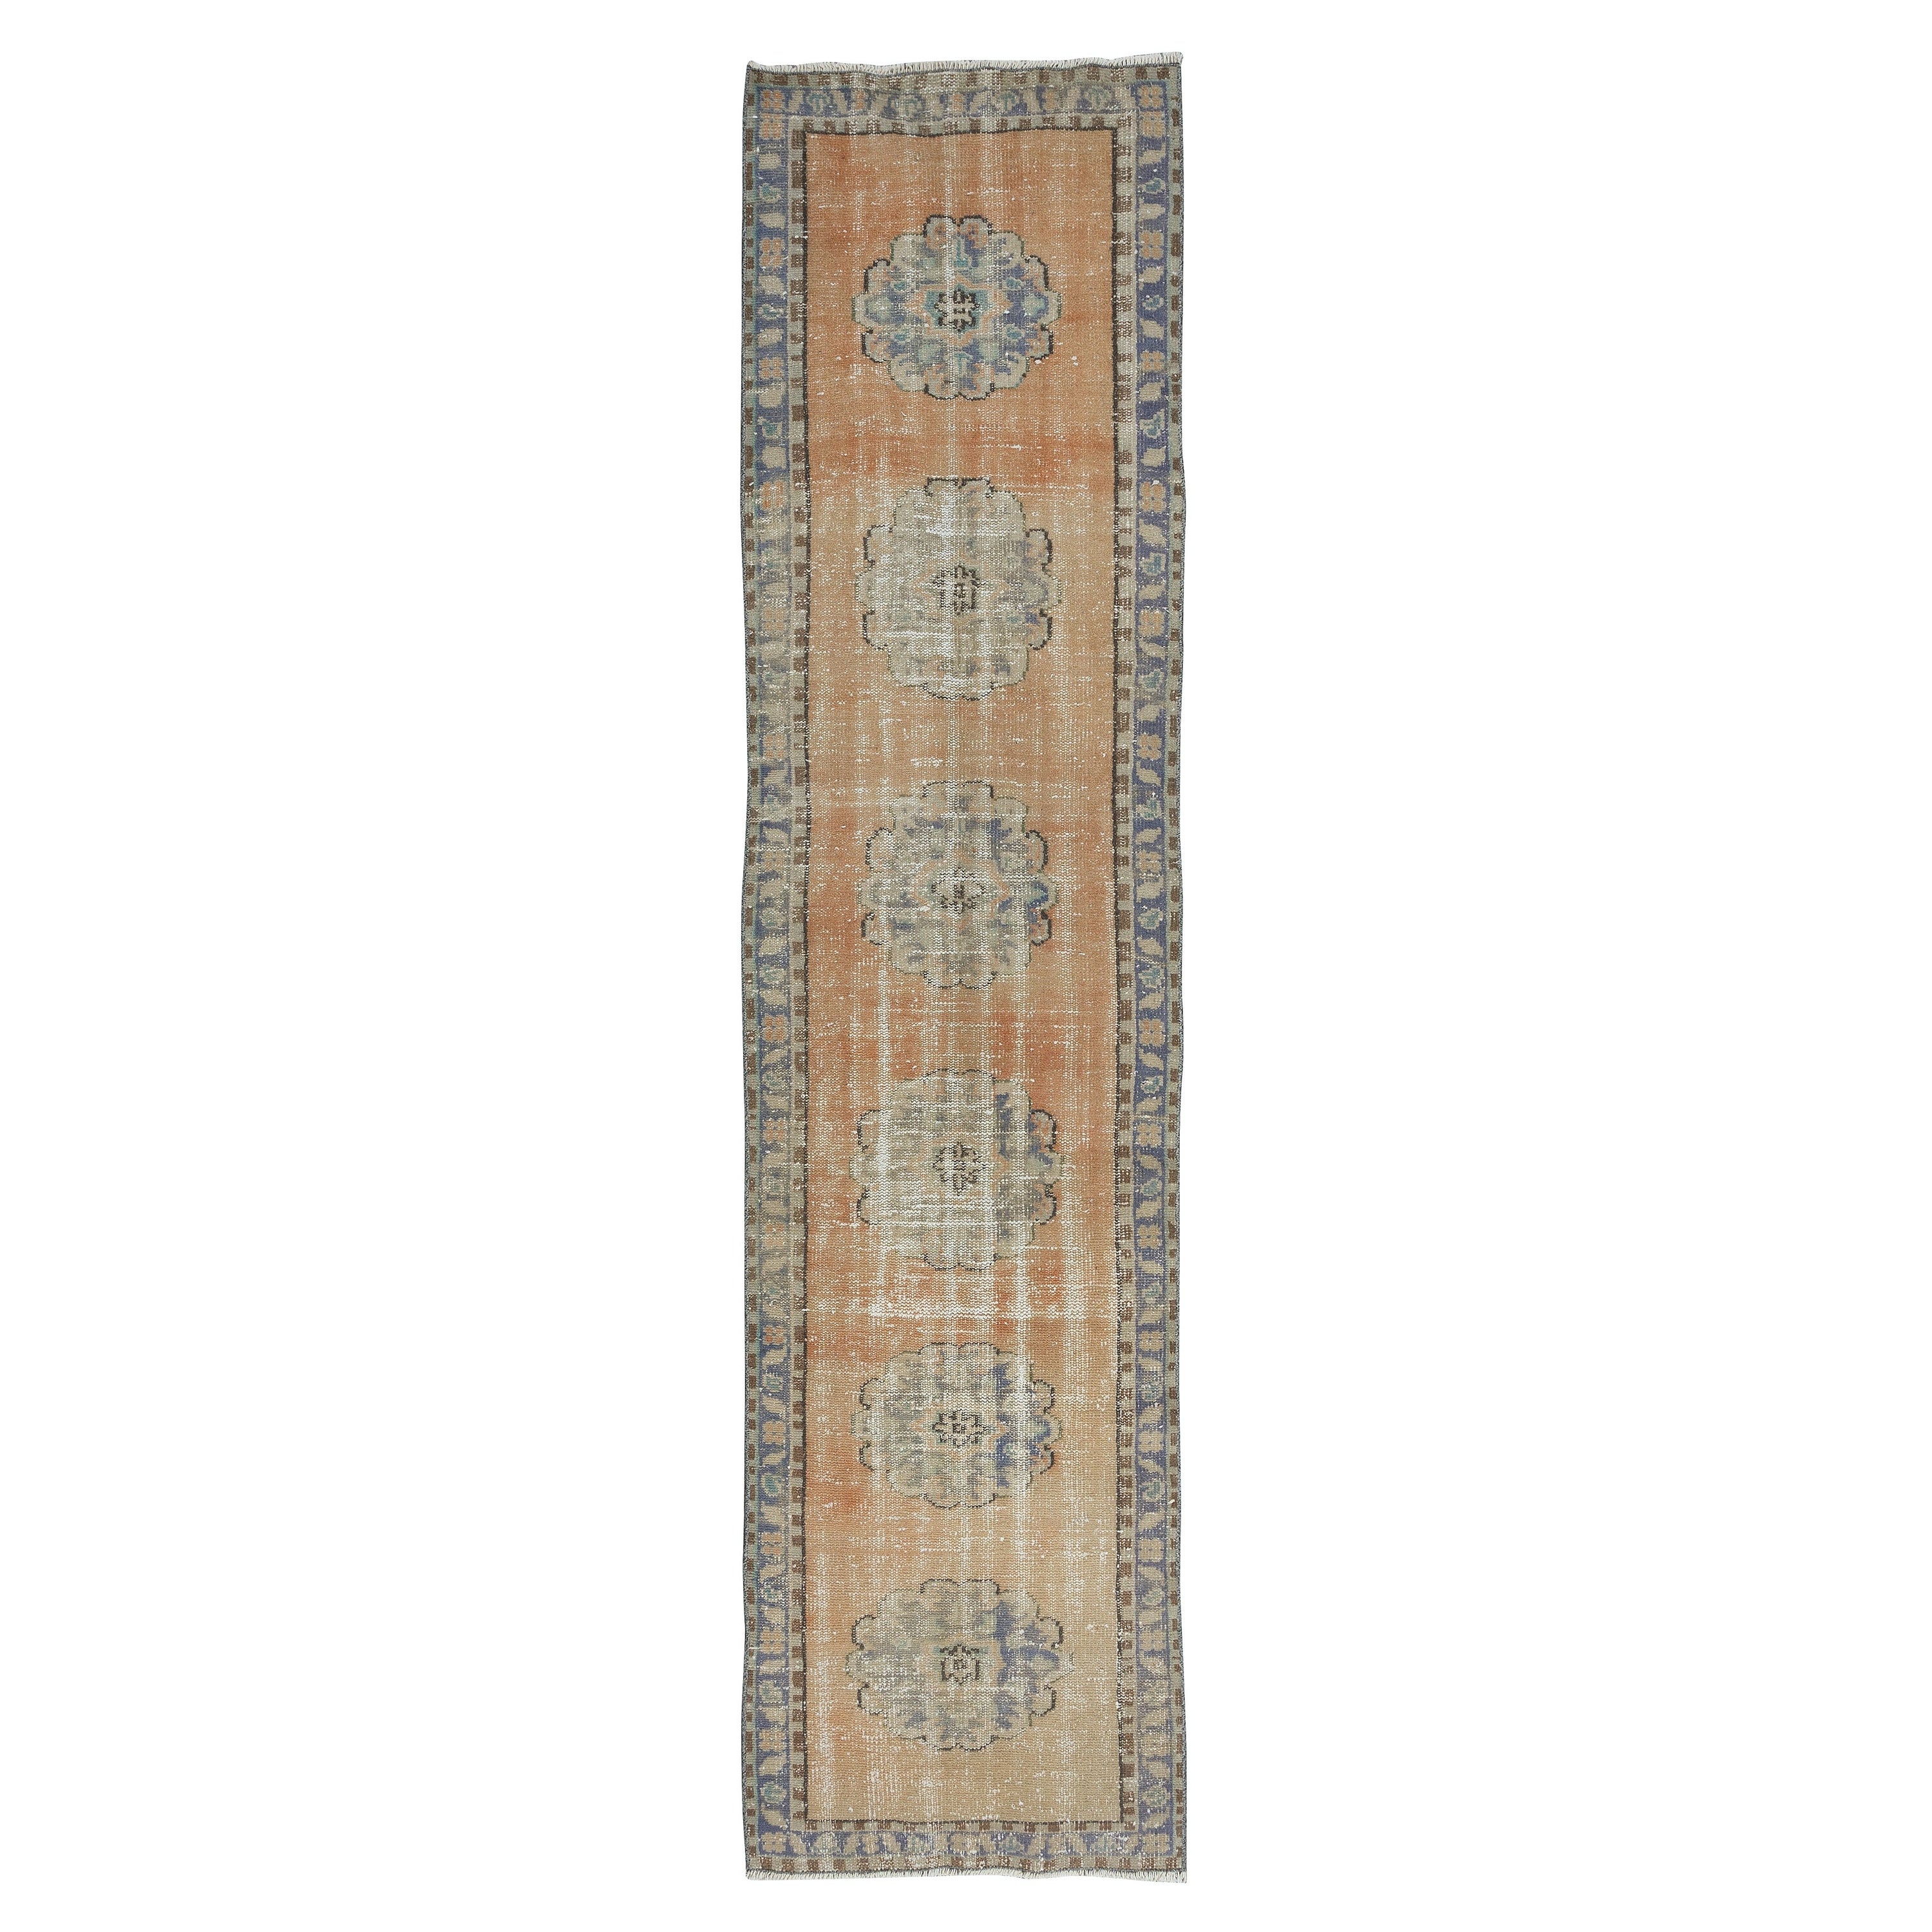 2.8x11.2 Ft Vintage Stair Runner Rug, Handmade Turkish Wool Corridor Carpet For Sale